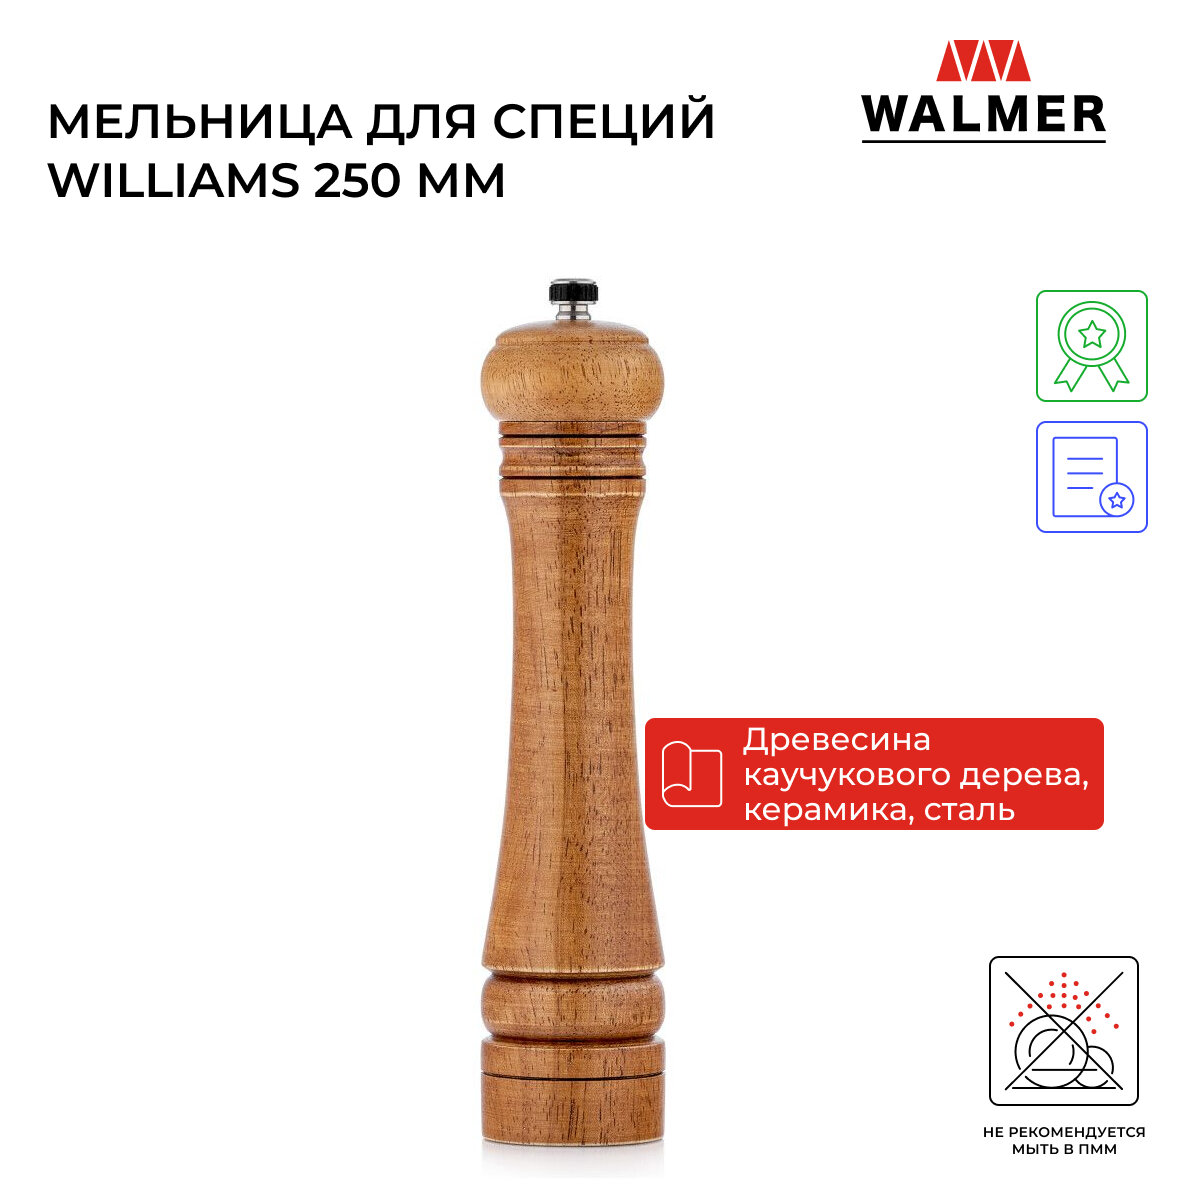 Мельница ручная для специй Walmer Williams 250 мм цвет коричневый